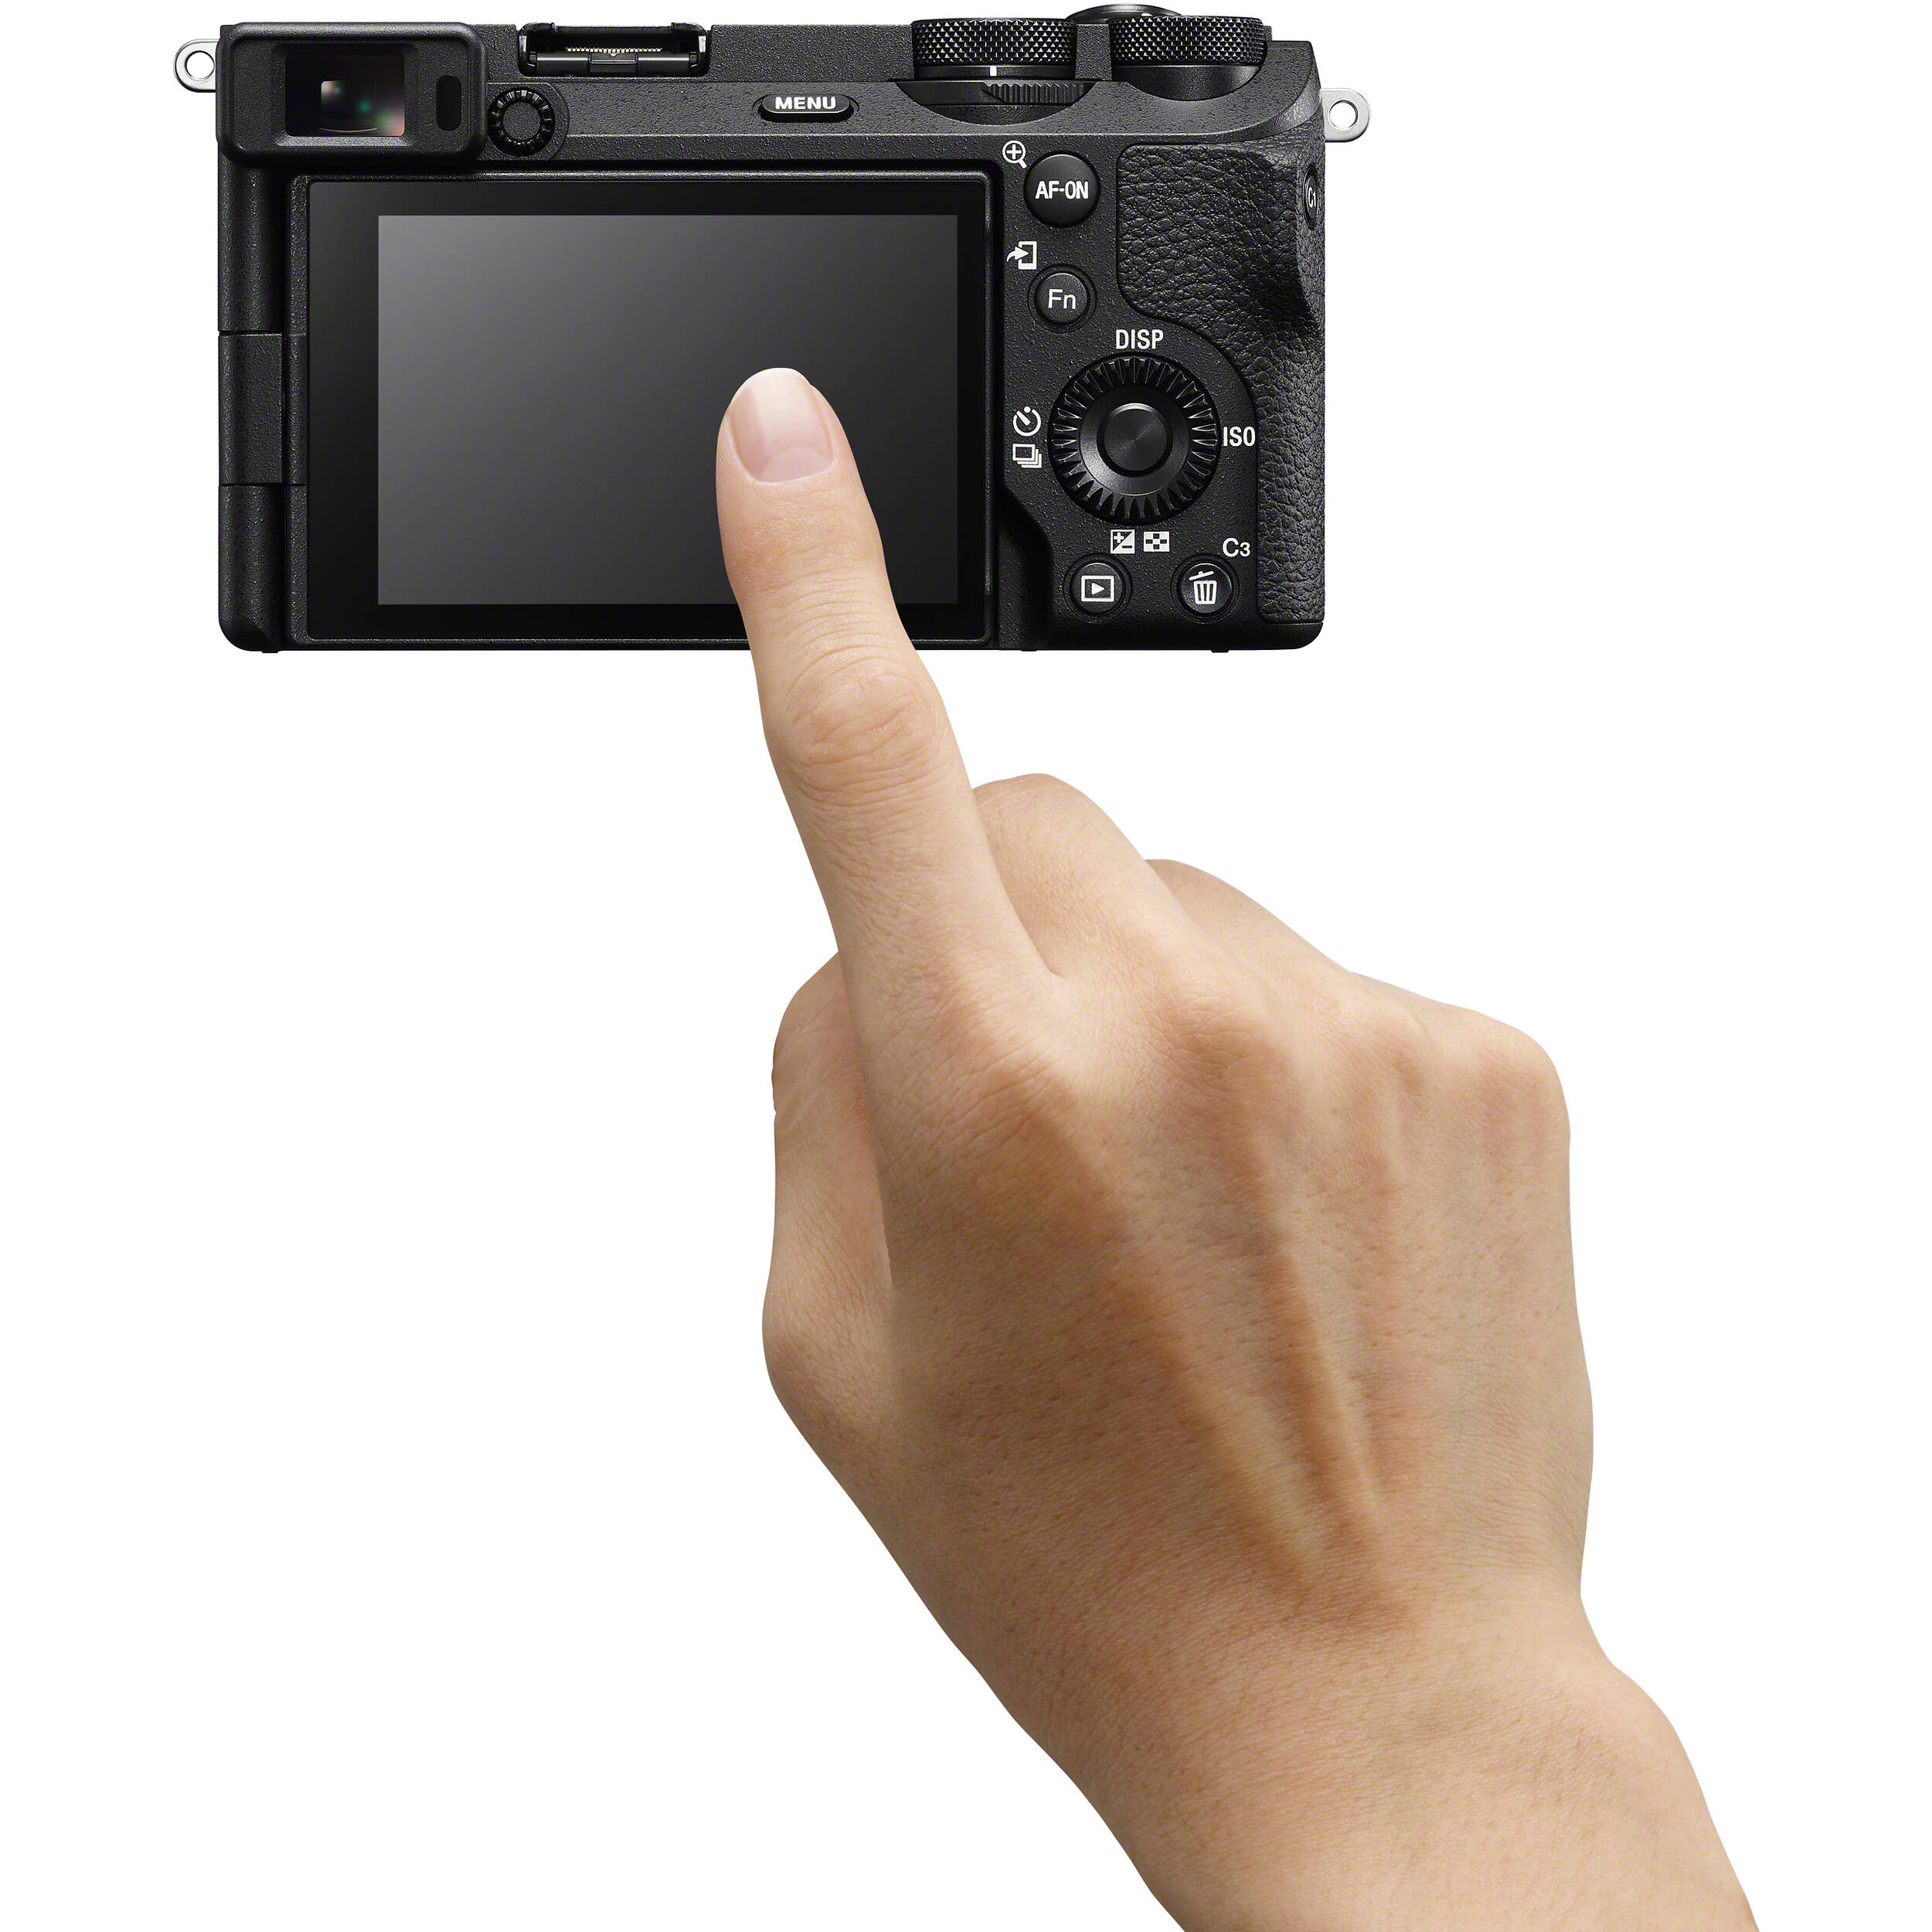 Caméra sans miroir Sony A6700 avec objectif 18-135 mm